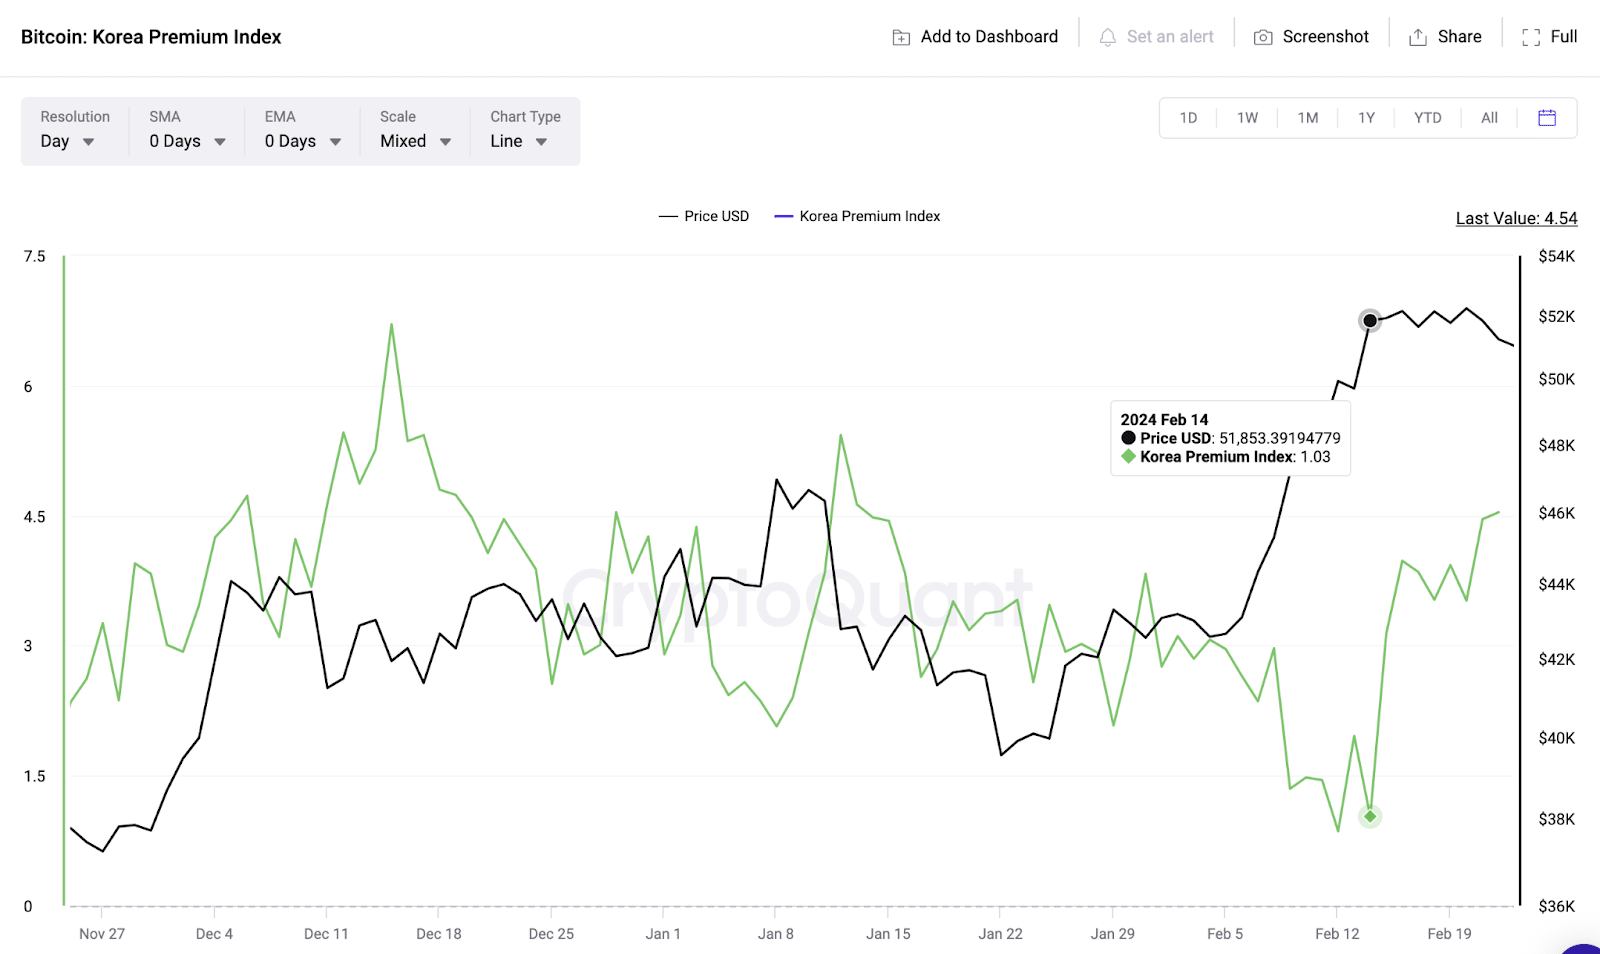 Bitcoin (BTC) Korean Premium Index vs. Price